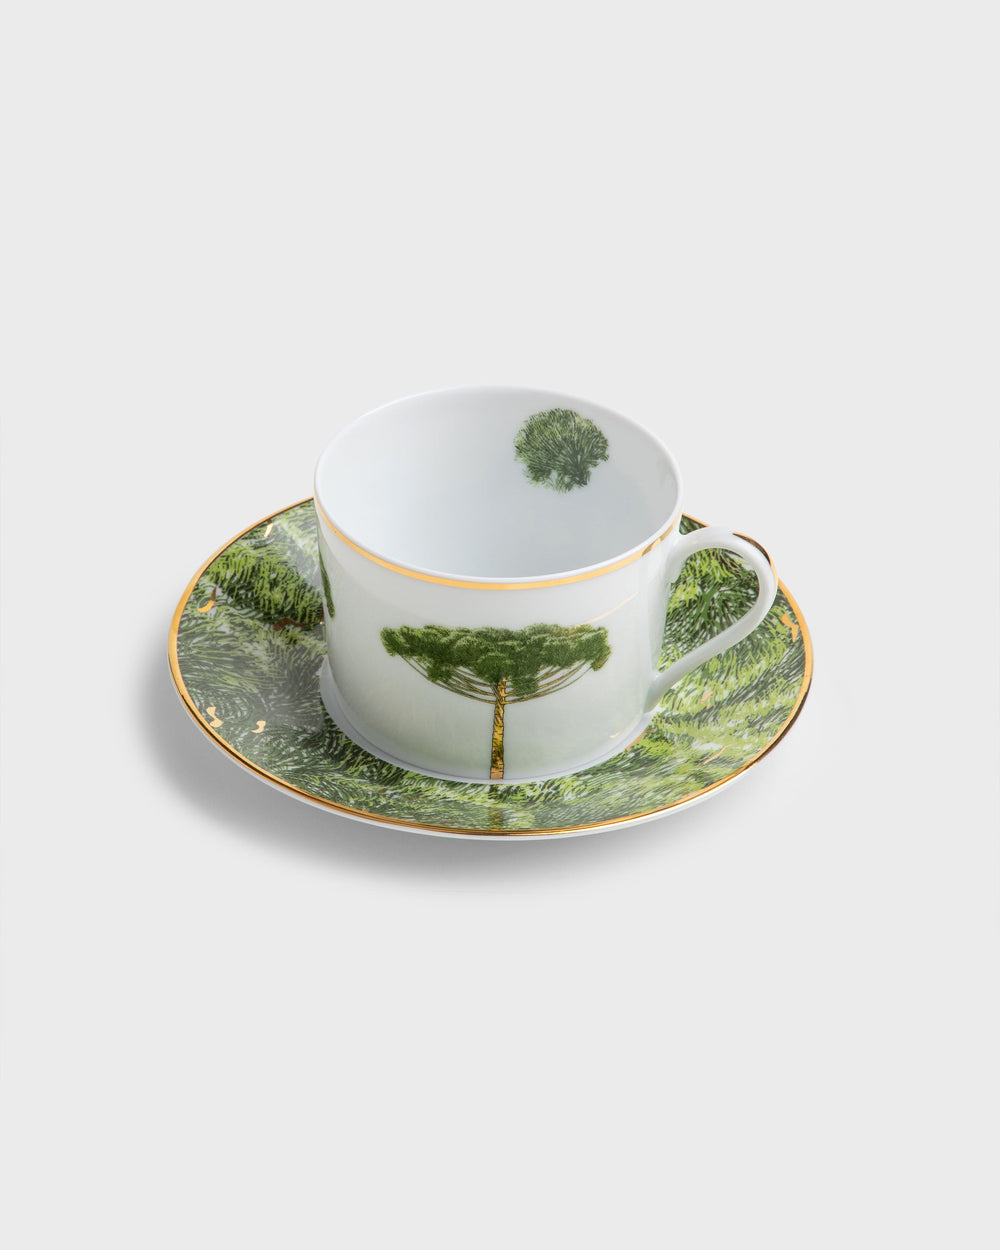 Tania Bulhoes Tea Cup and Saucer Arvores do Brasil 4 Piece Set